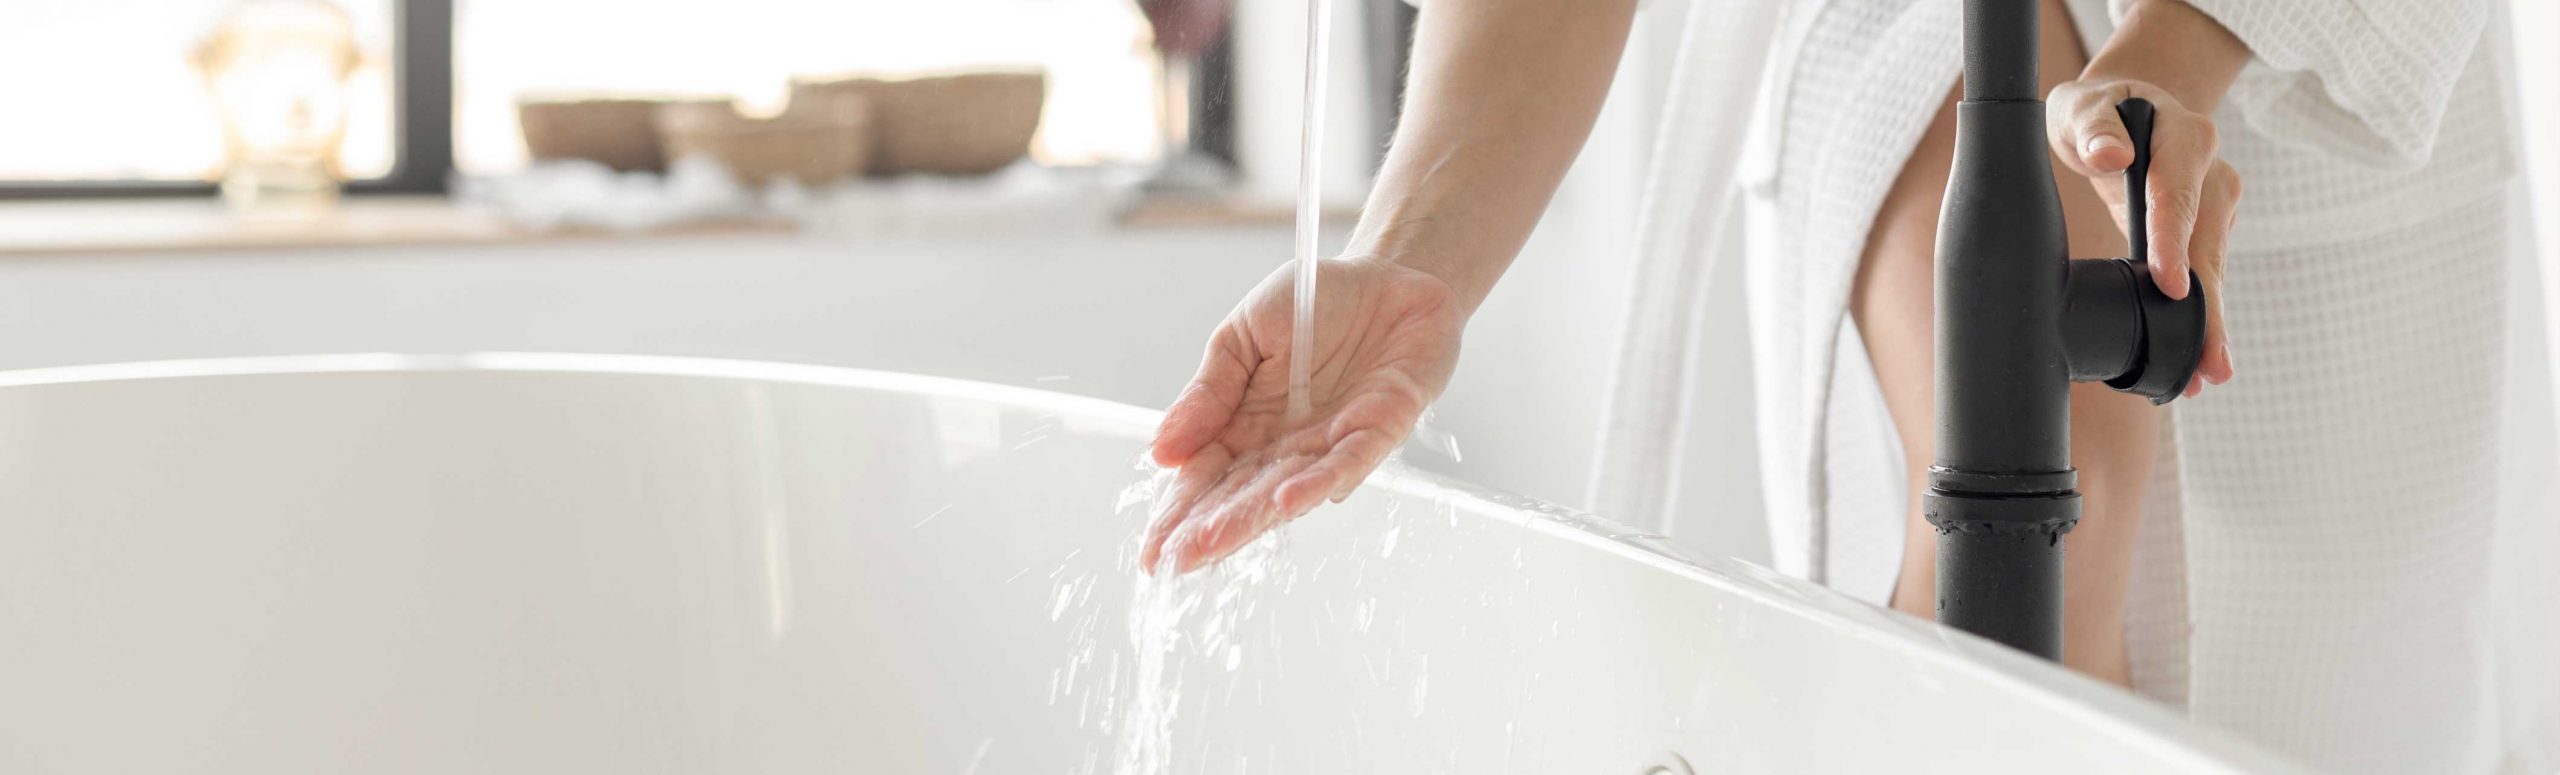 女人的手检查水温从水龙头超过浴缸